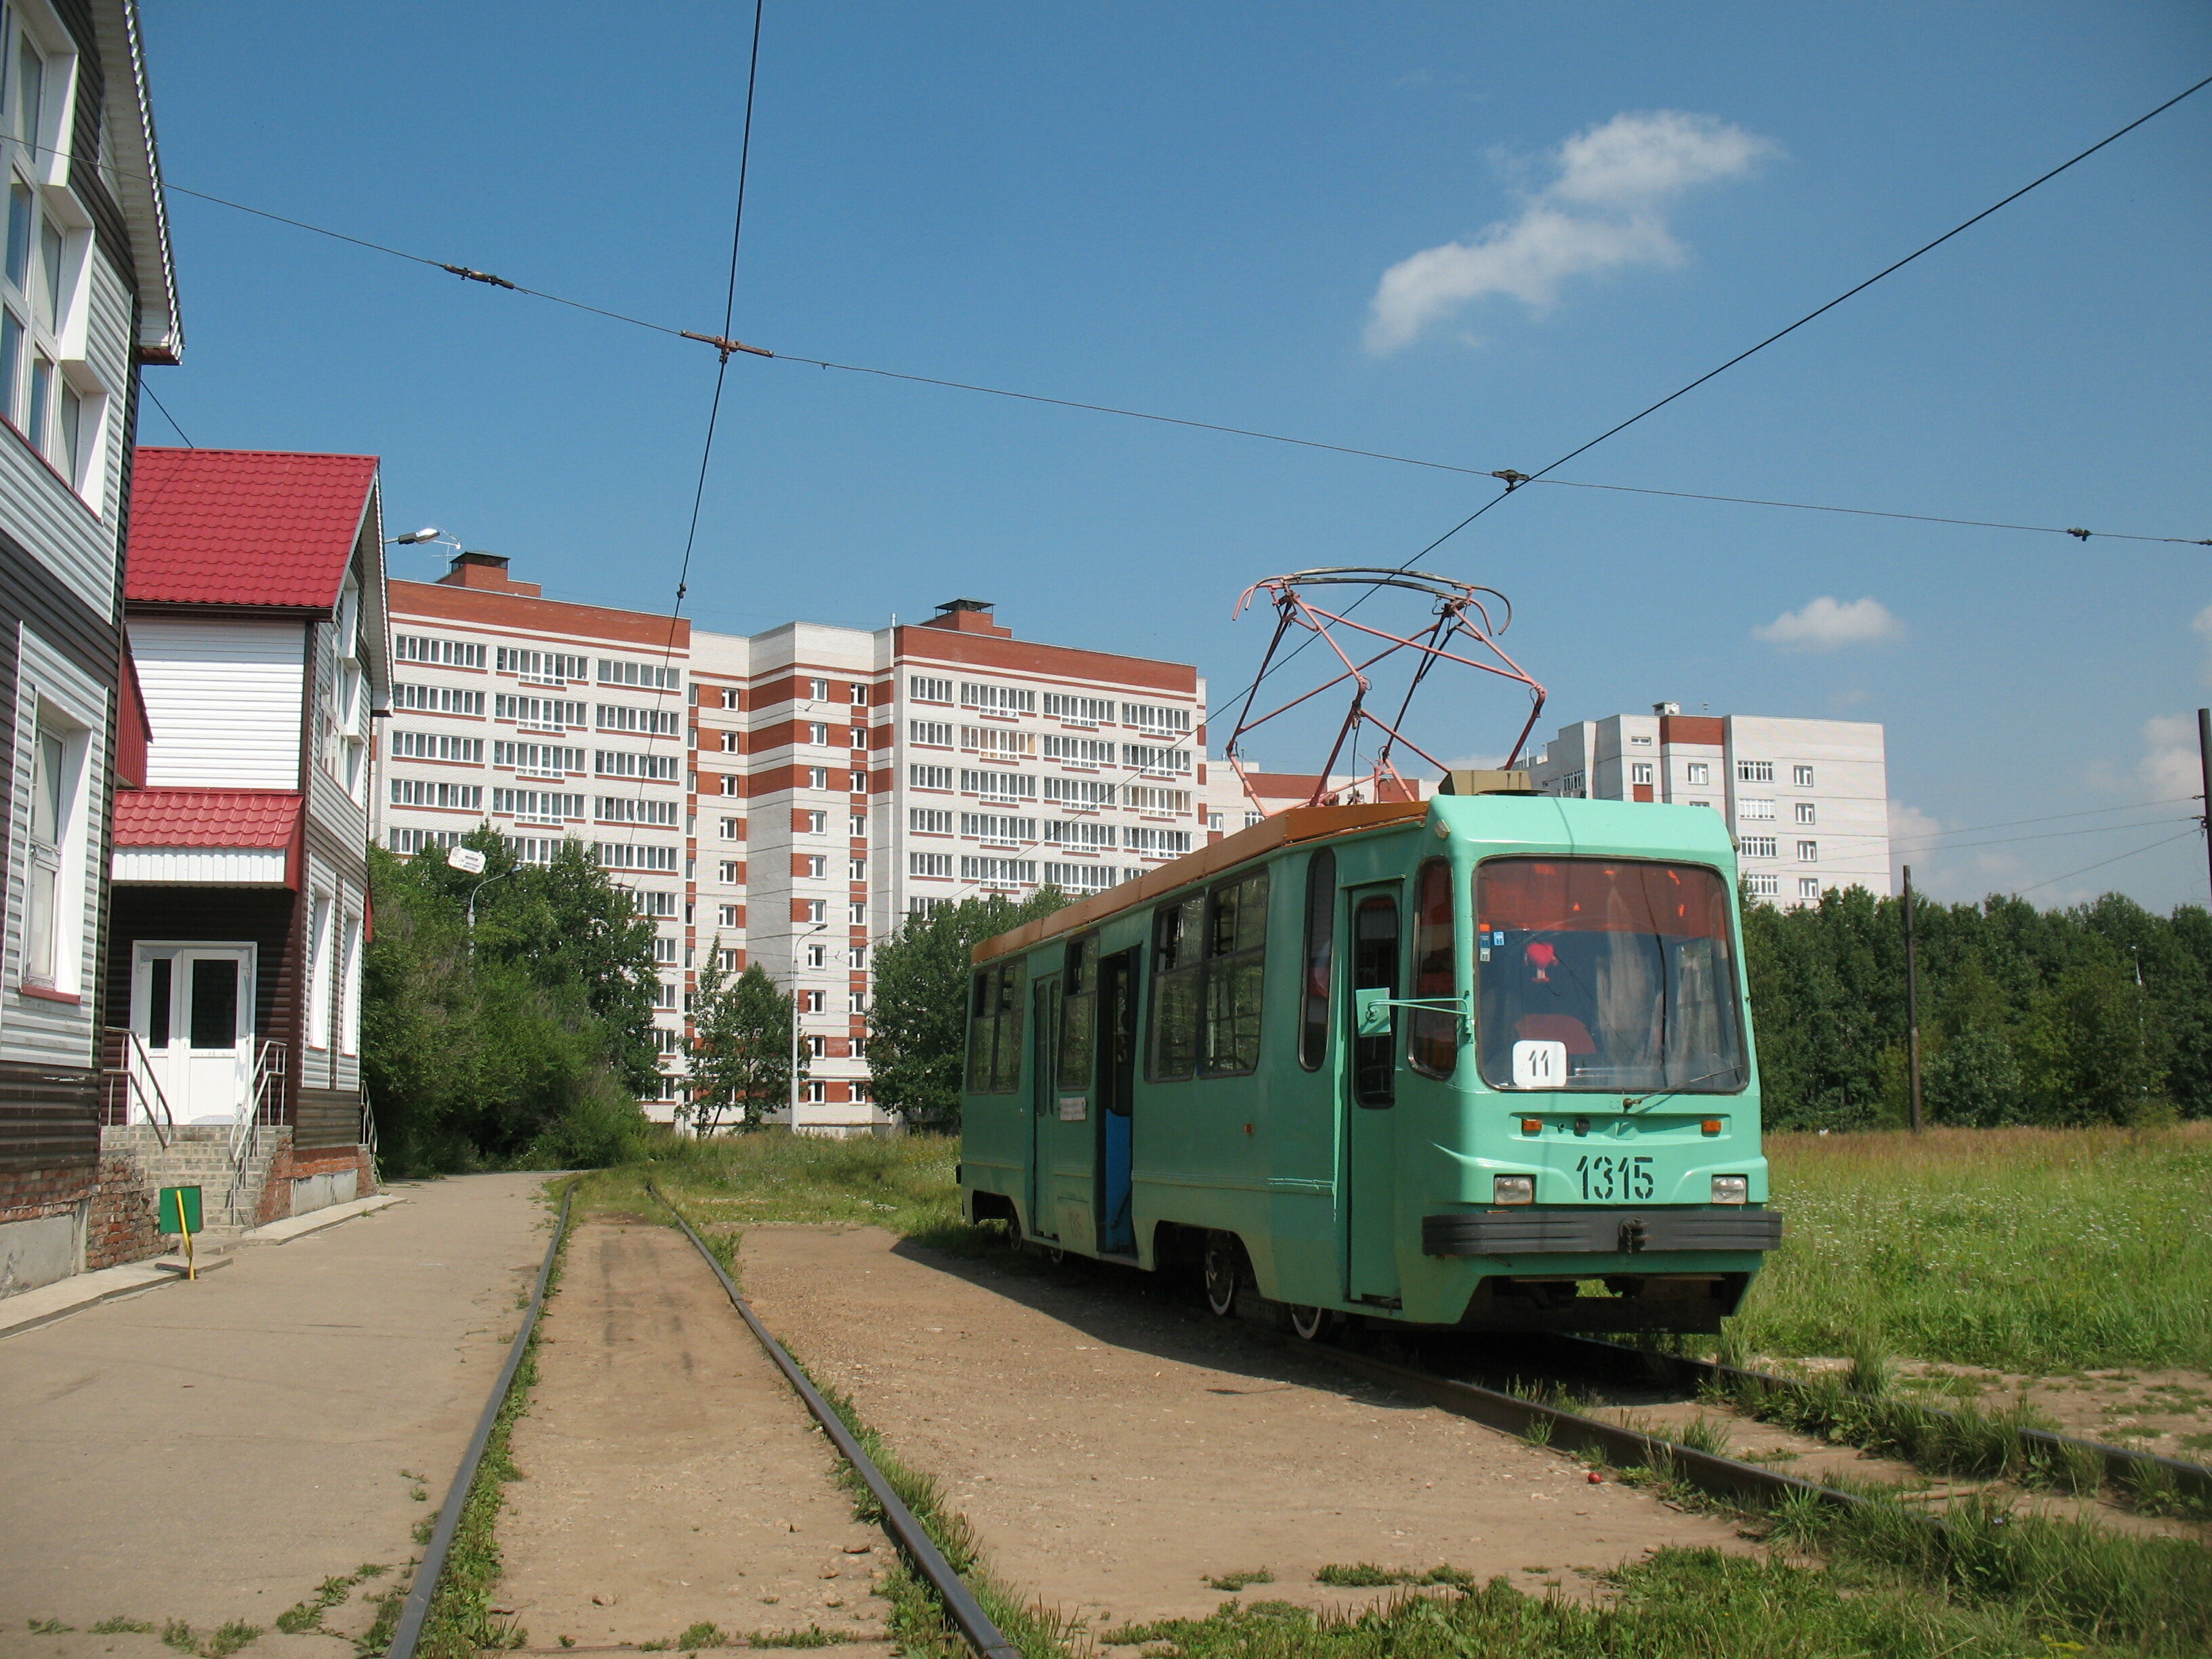 Трамвай ЛМ-99 1315, маршрут 11